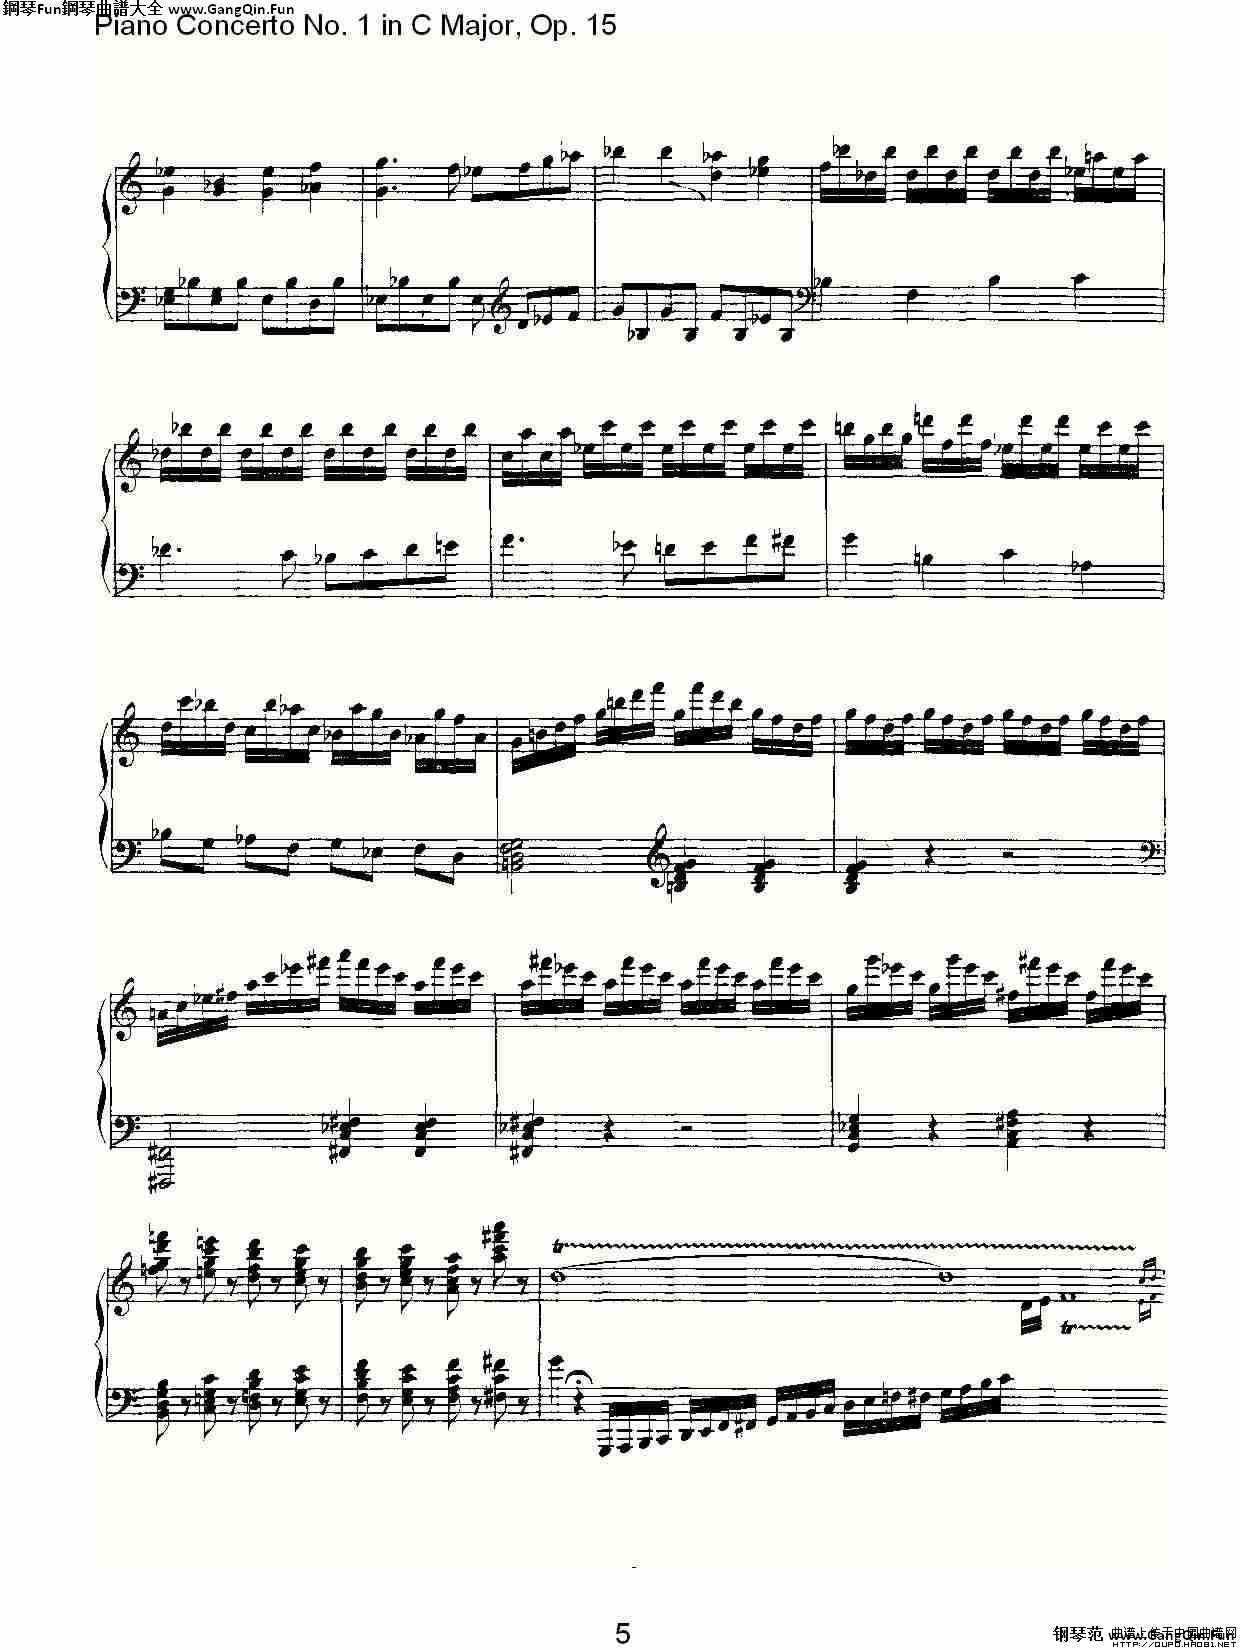 C大調鋼琴第一協奏曲 Op.15 華彩樂段_簡譜